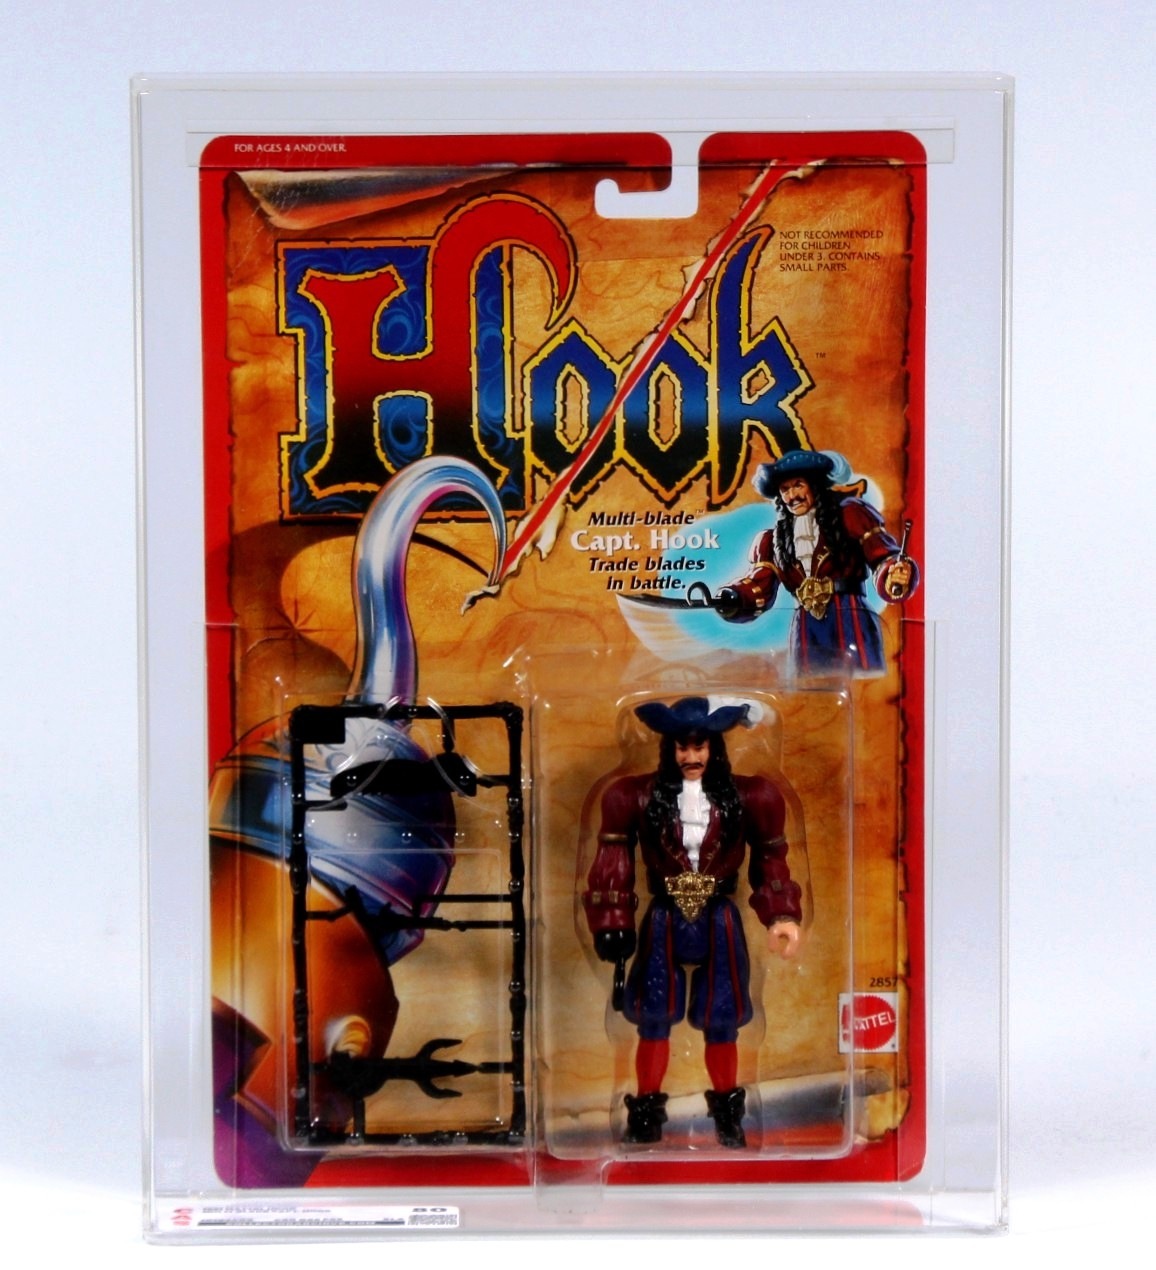 1991 Mattel Hook Carded Action Figure - Multi-Blade Capt. Hook